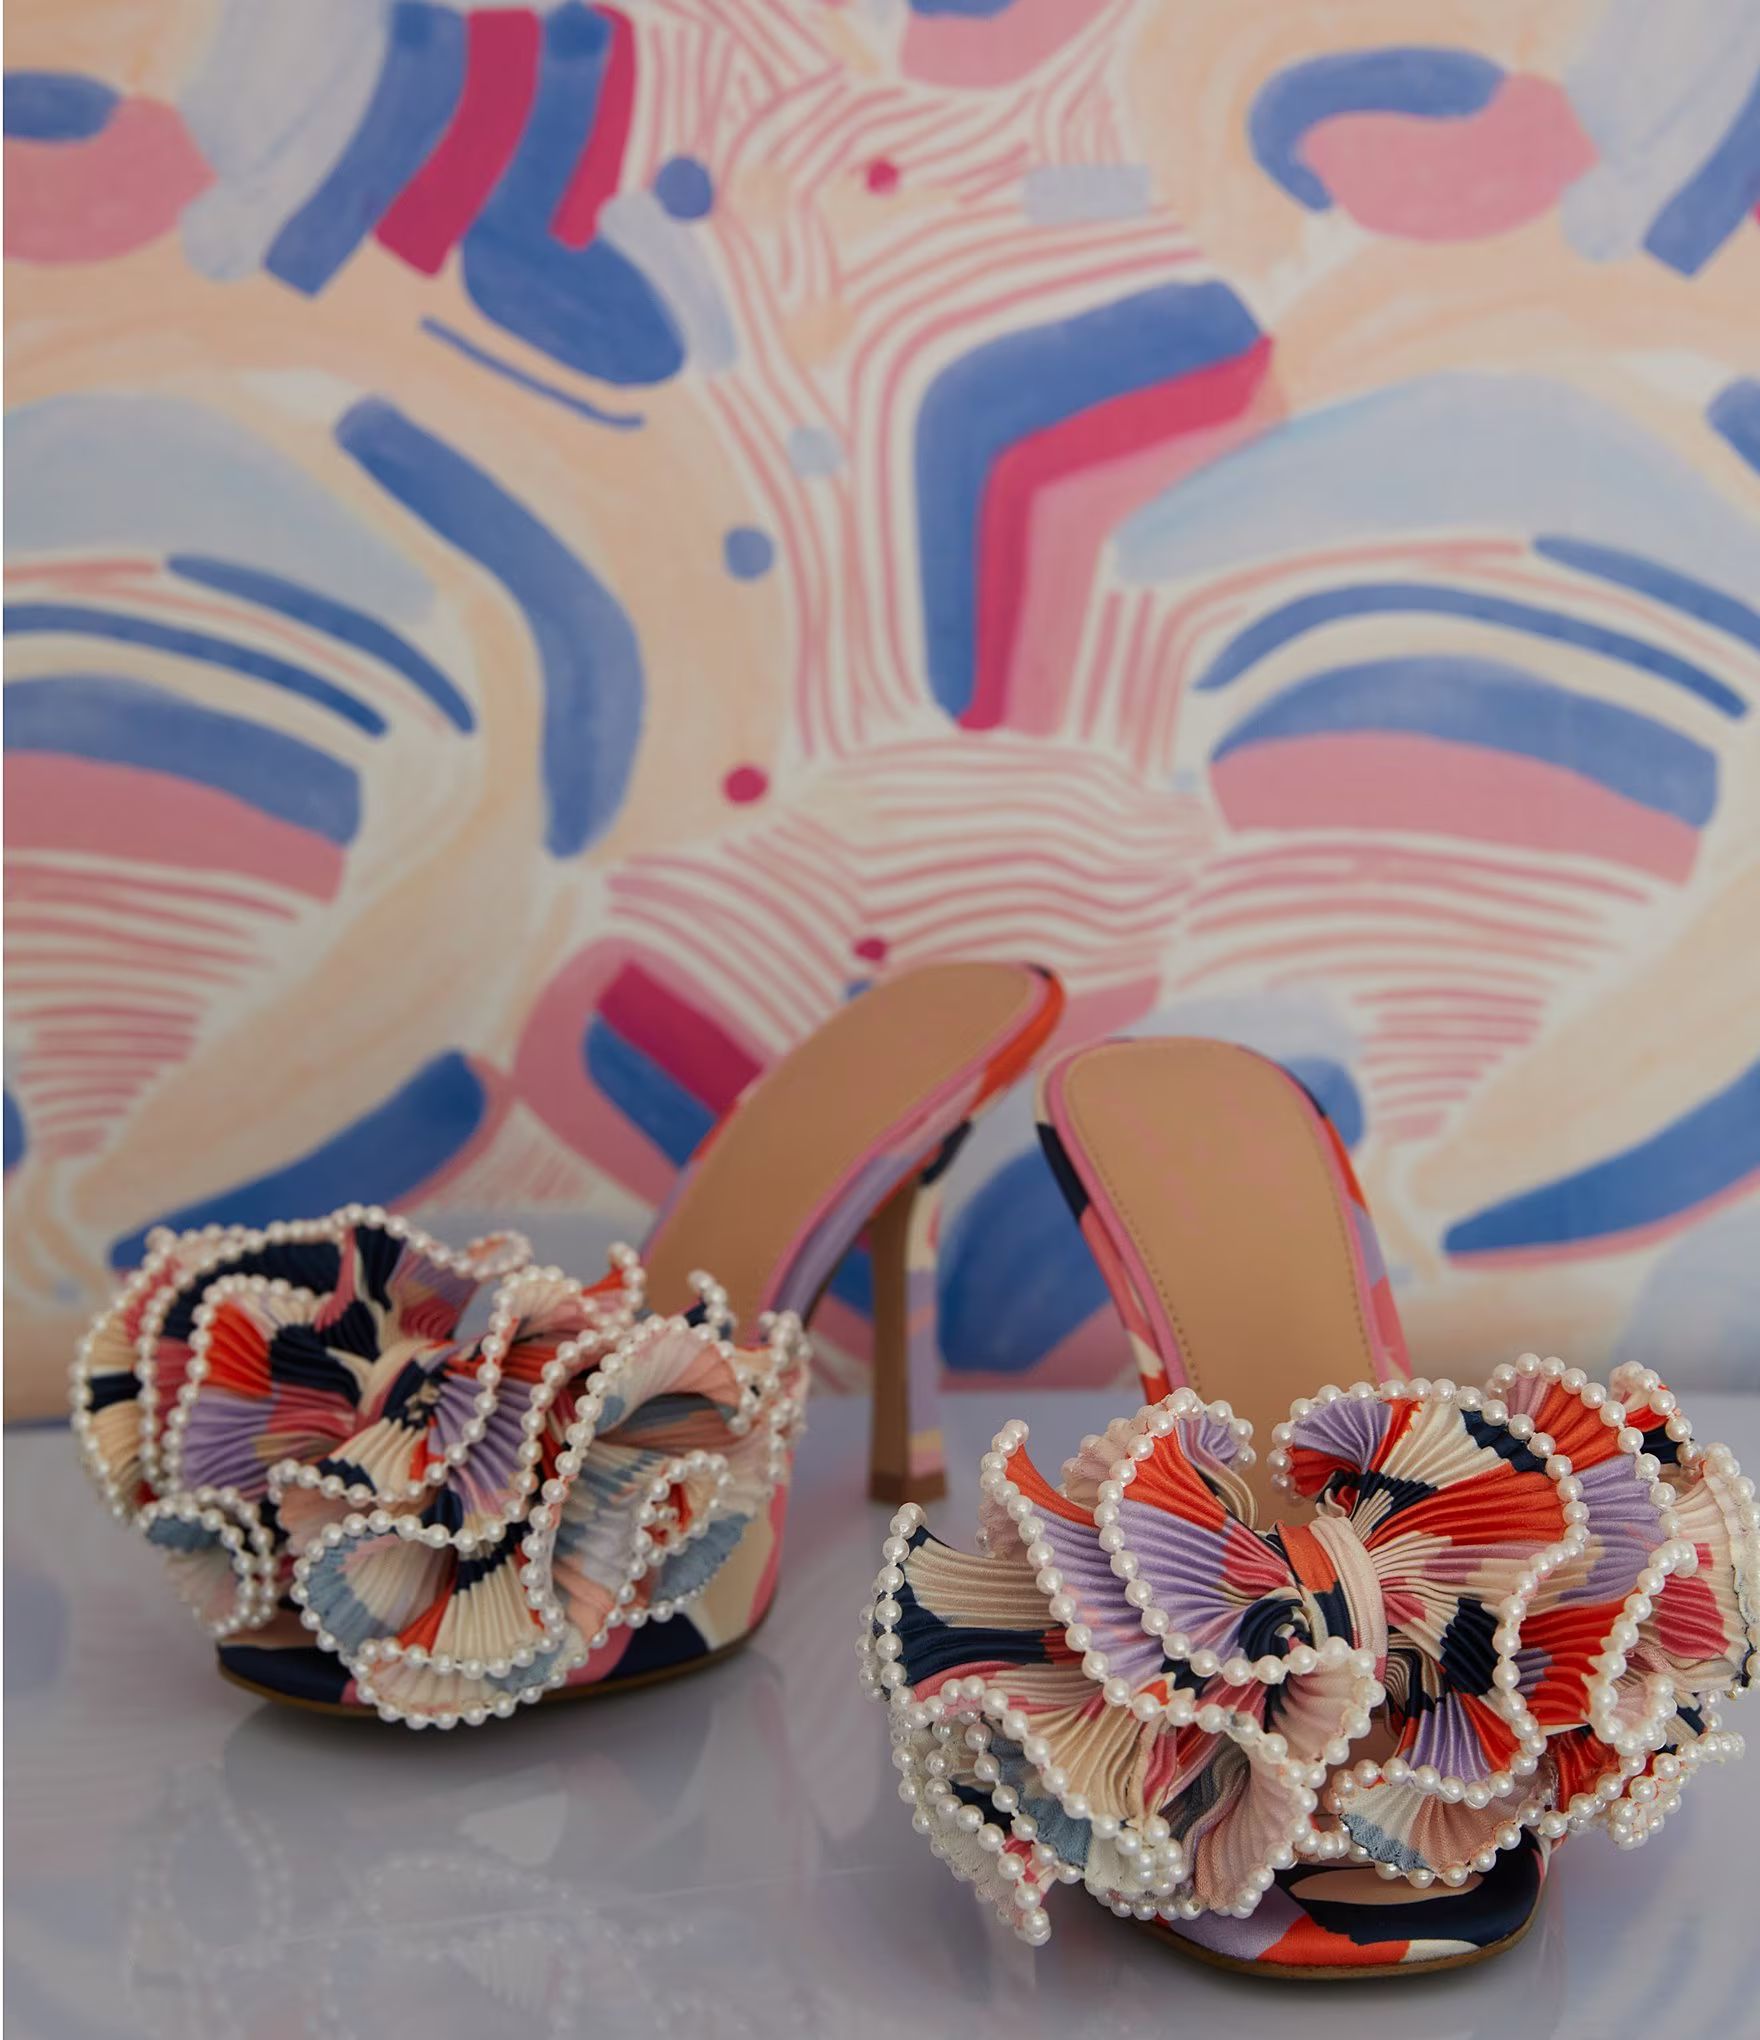 x Venita Aspen Harlow Printed Pleated Pearl Bow Dress Sandals | Dillard's